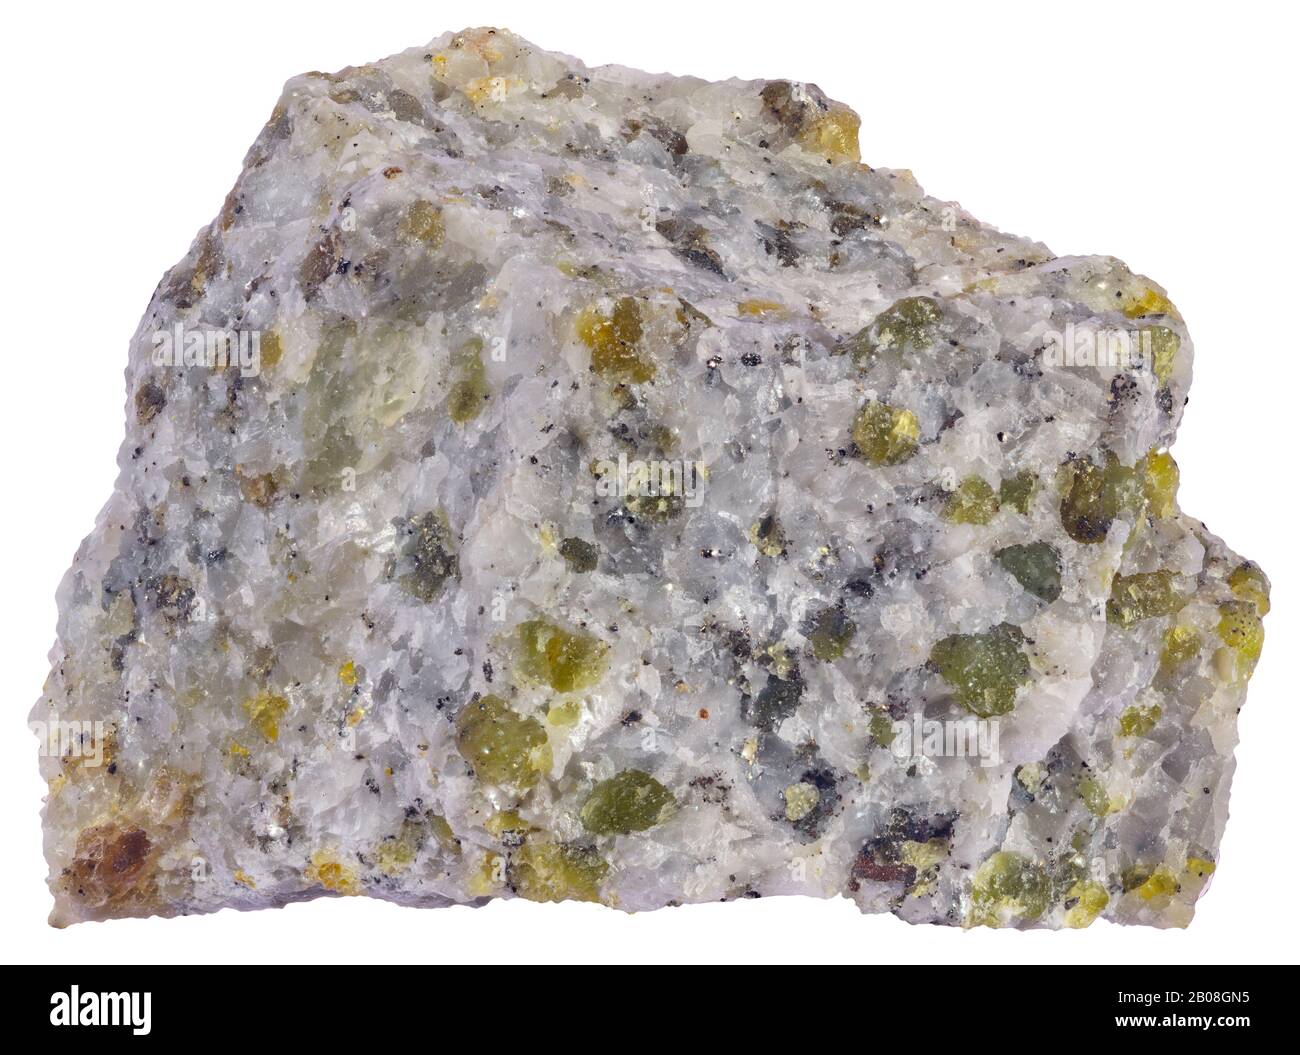 Olivina Gabbro, Plutonico, Grenville, Quebec una roccia plutonica a grana grossa composta essenzialmente da plagioclasi calcica, pirossene e ossidi di ferro. Foto Stock